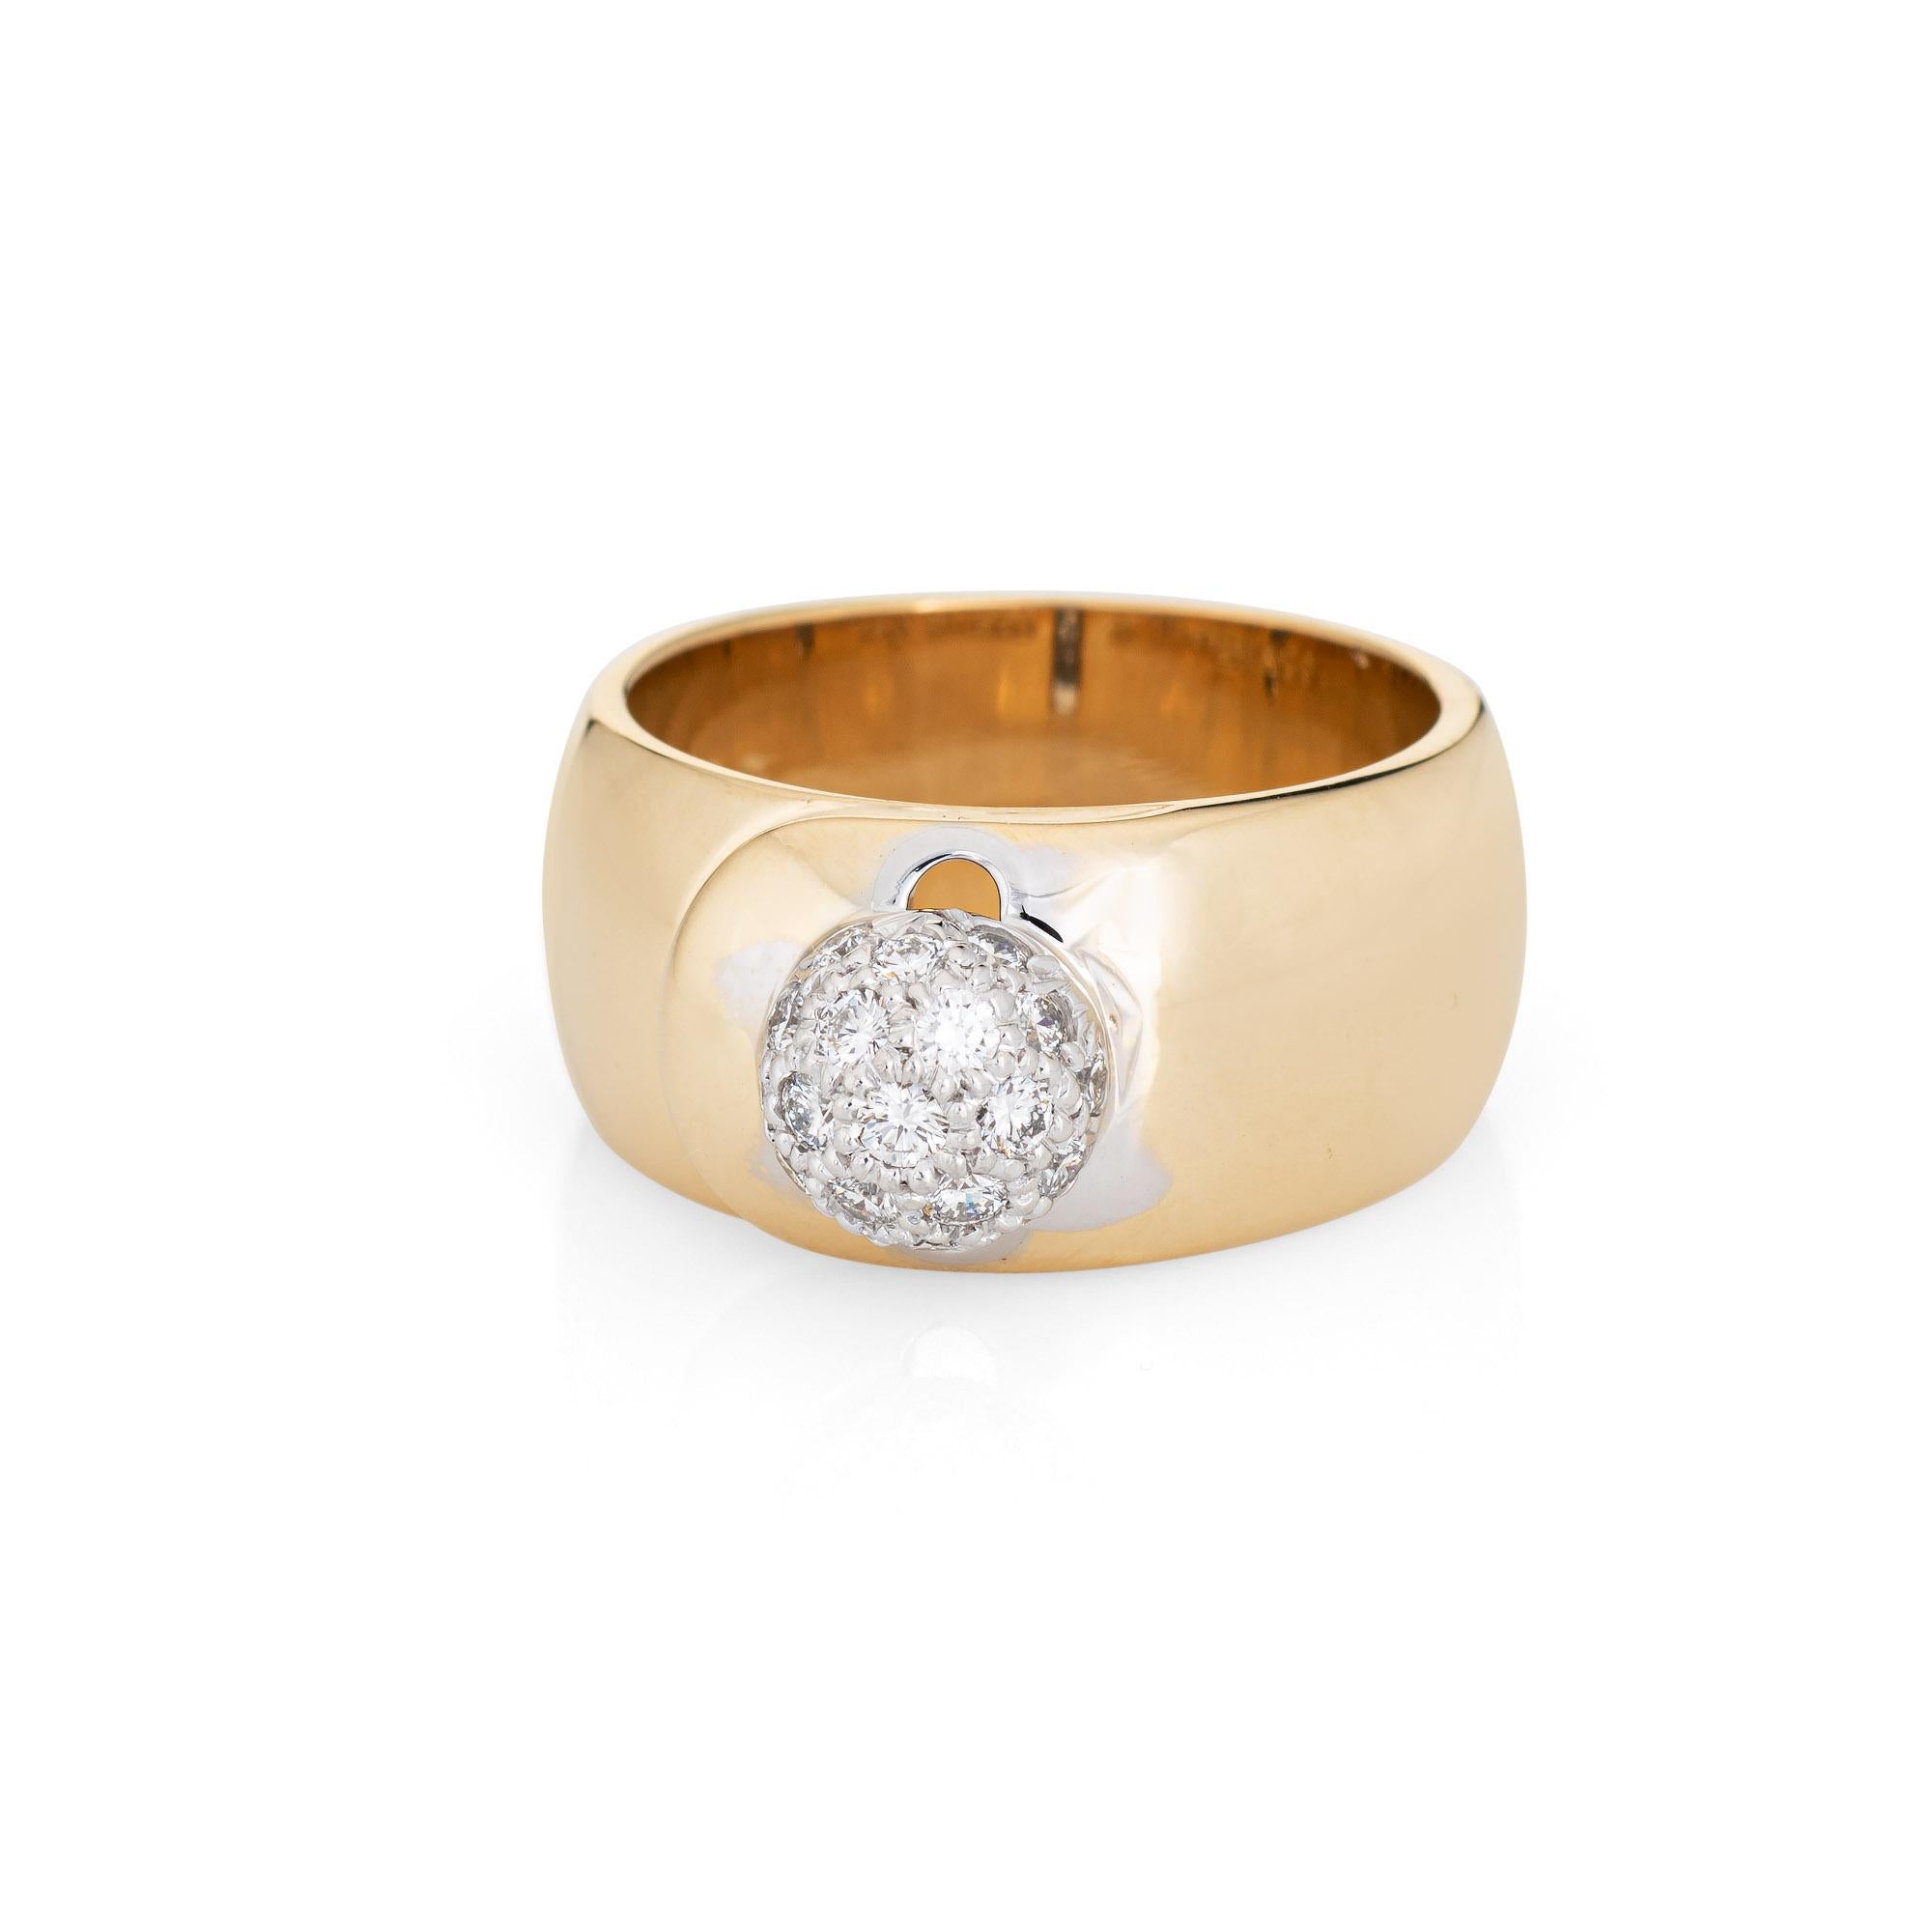 Bague boule en diamant vintage de Tiffany & By (attribuée à Paloma Picasso), réalisée en or jaune 18 carats et platine (circa 1980).  

Les diamants ronds de taille brillant totalisent un poids estimé à 0,50 carats (couleur estimée G-H et pureté